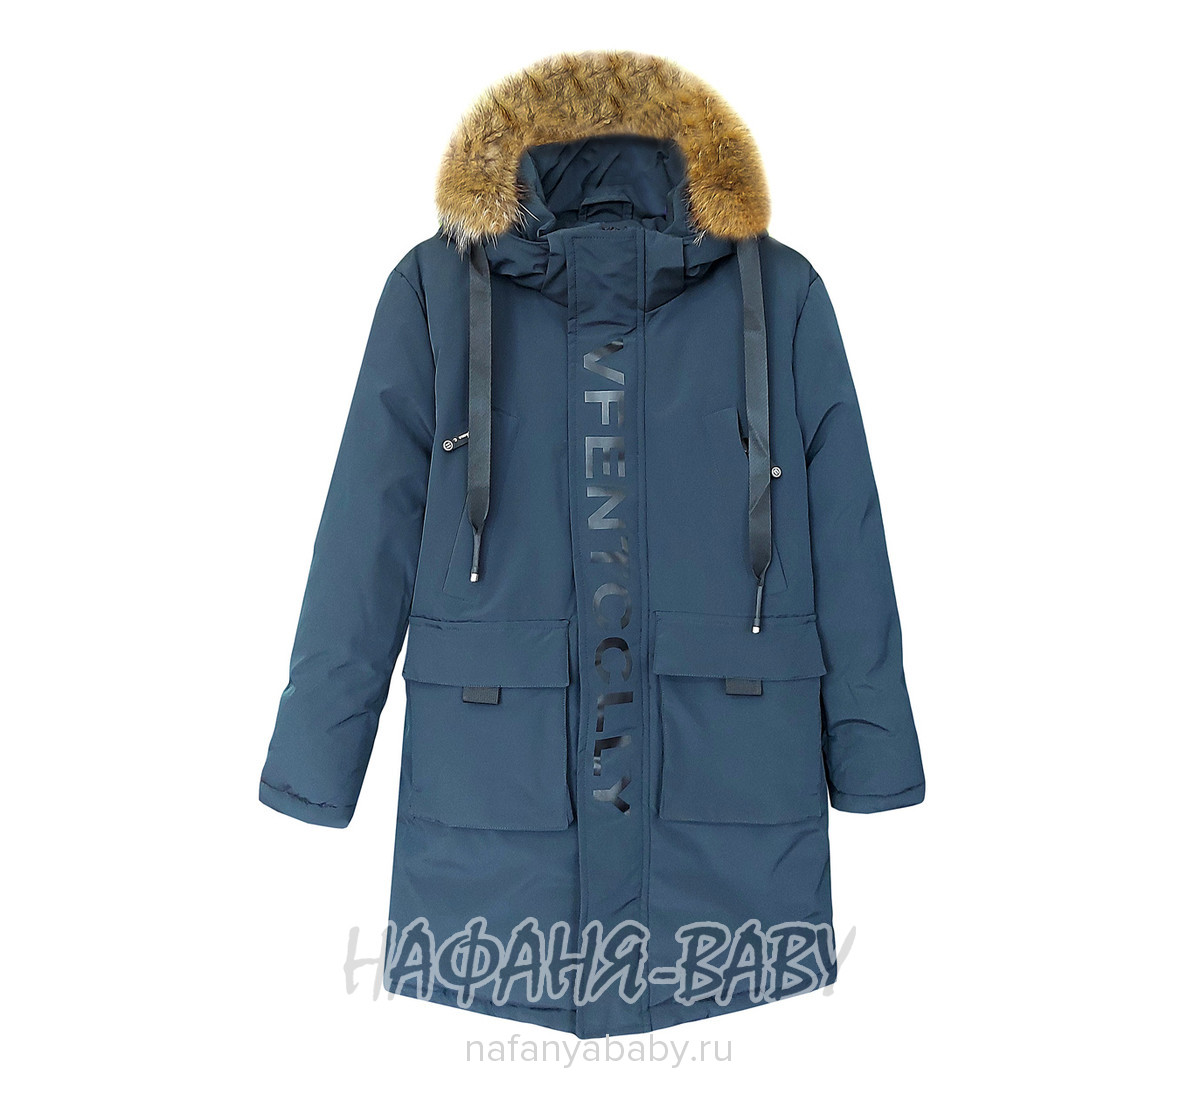 Зимнее пальто для мальчика YUHANG, купить в интернет магазине Нафаня. арт: 6621.